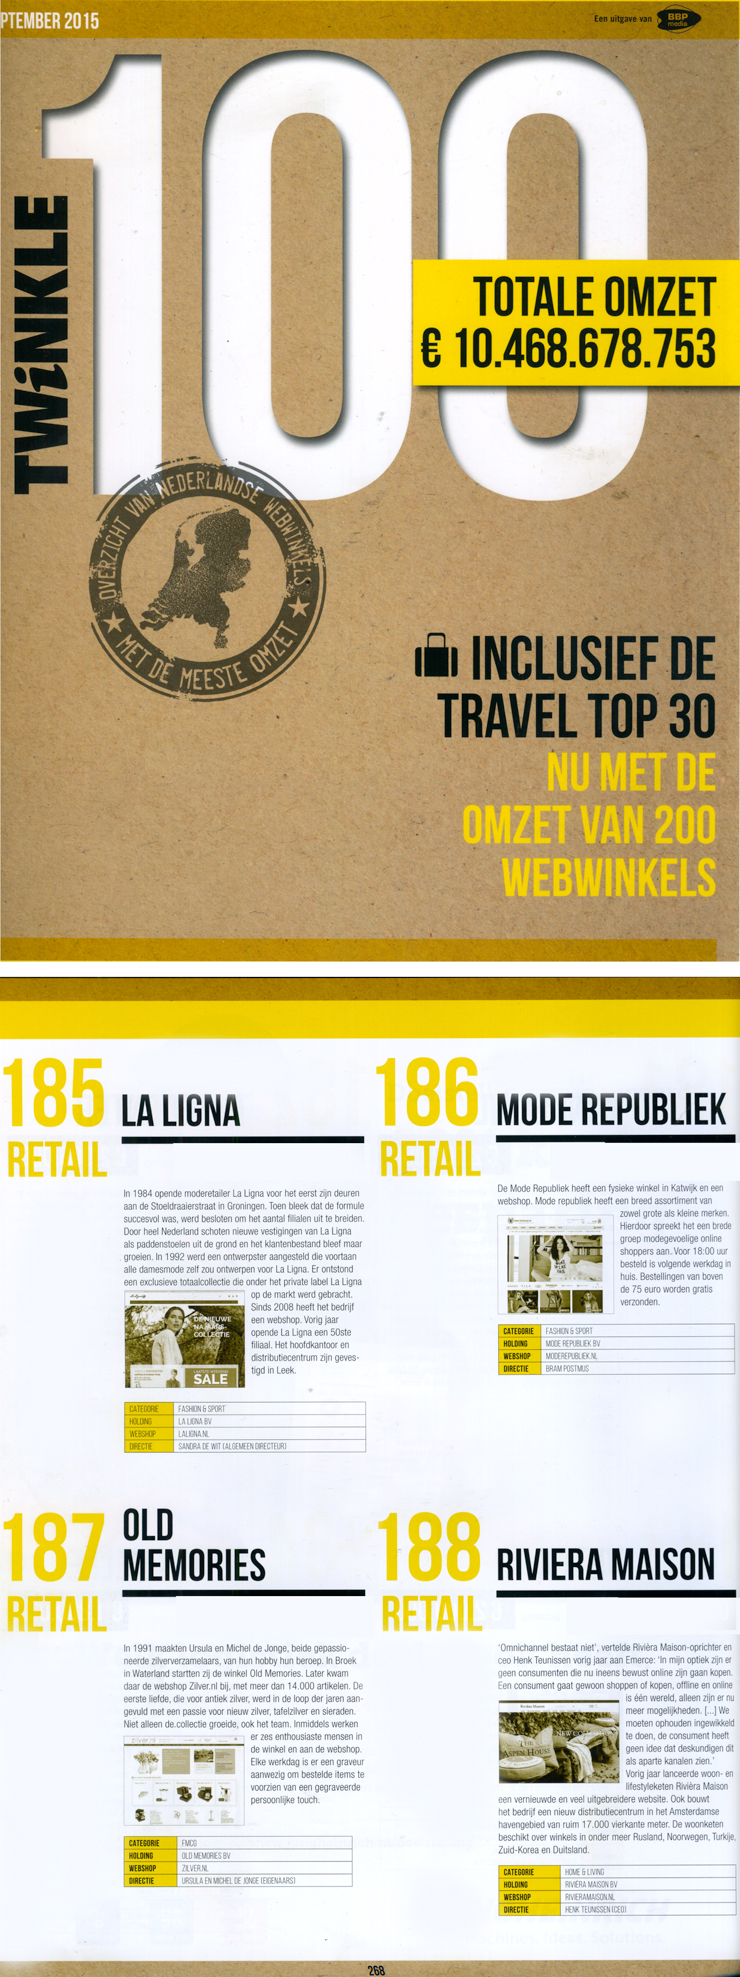 www.zilver.nl op 187 in de retail webwinkel 200